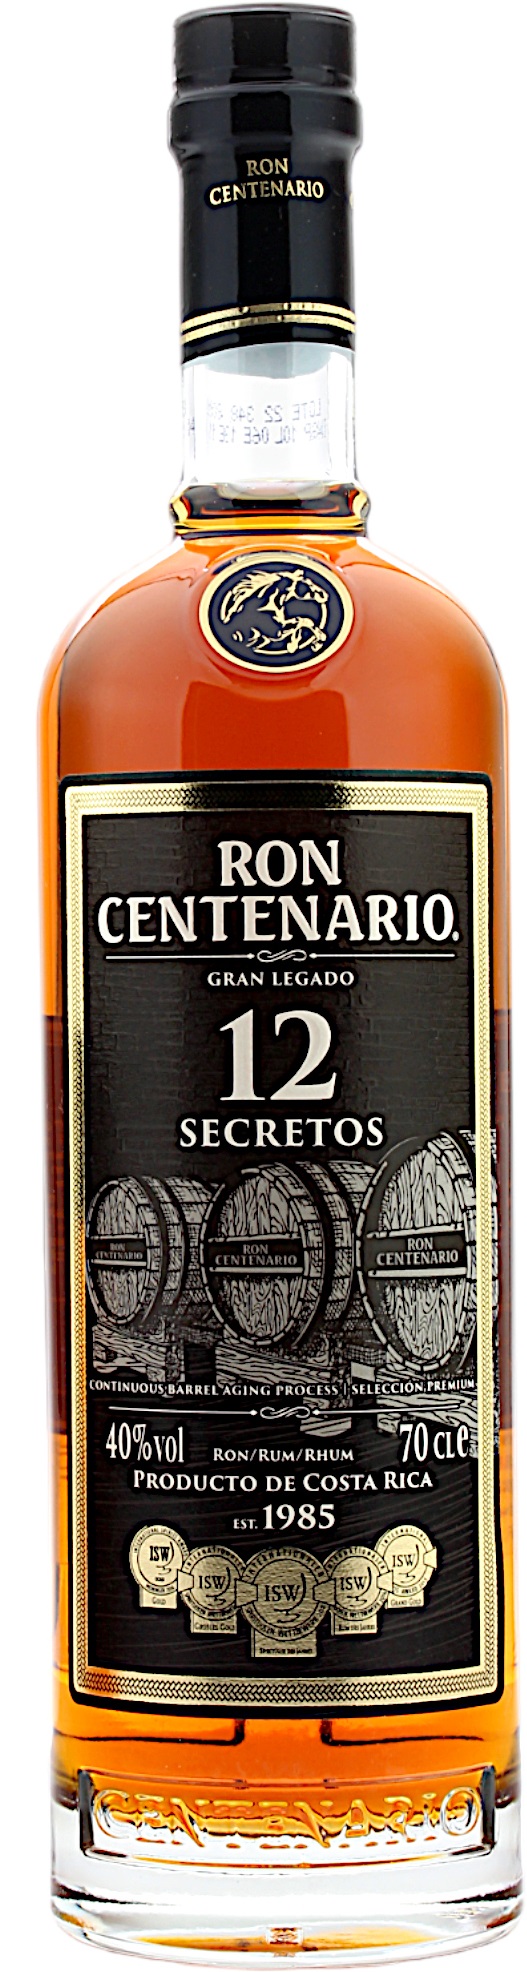 Ron Centenario 12 Secretos